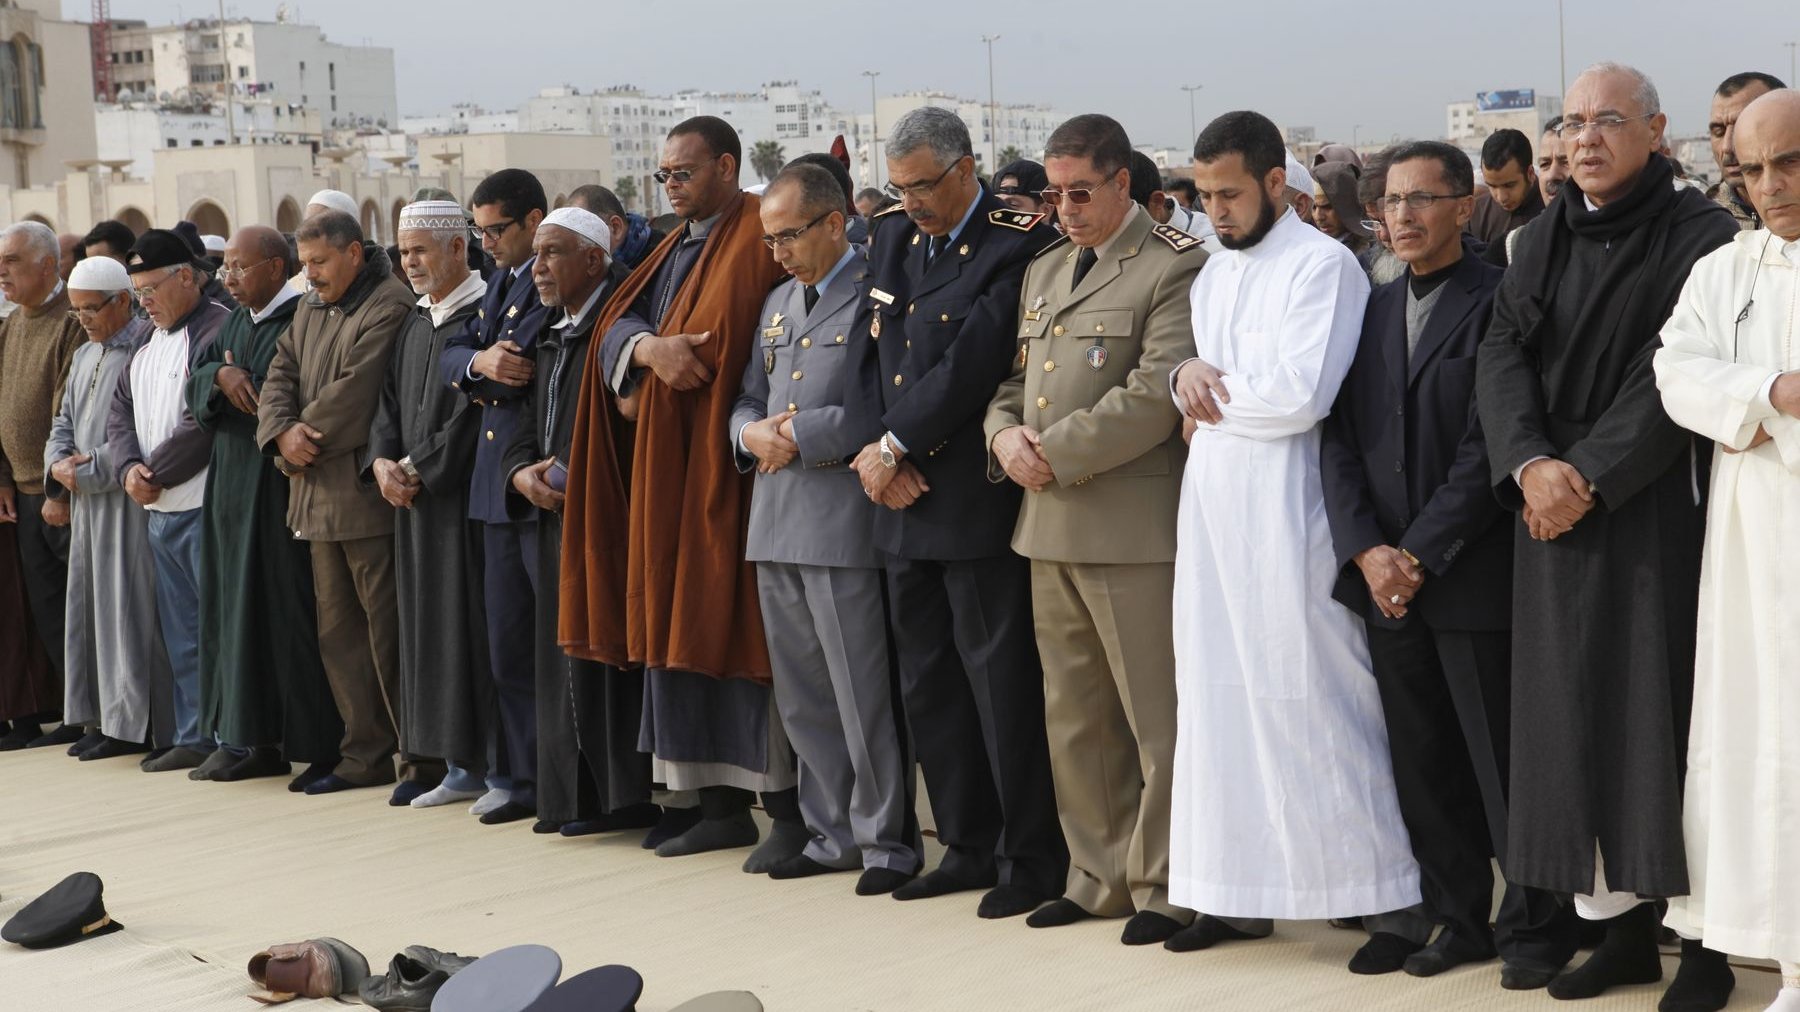 Les officiels ont occupé les premiers rangs de la prière rogatoire.
